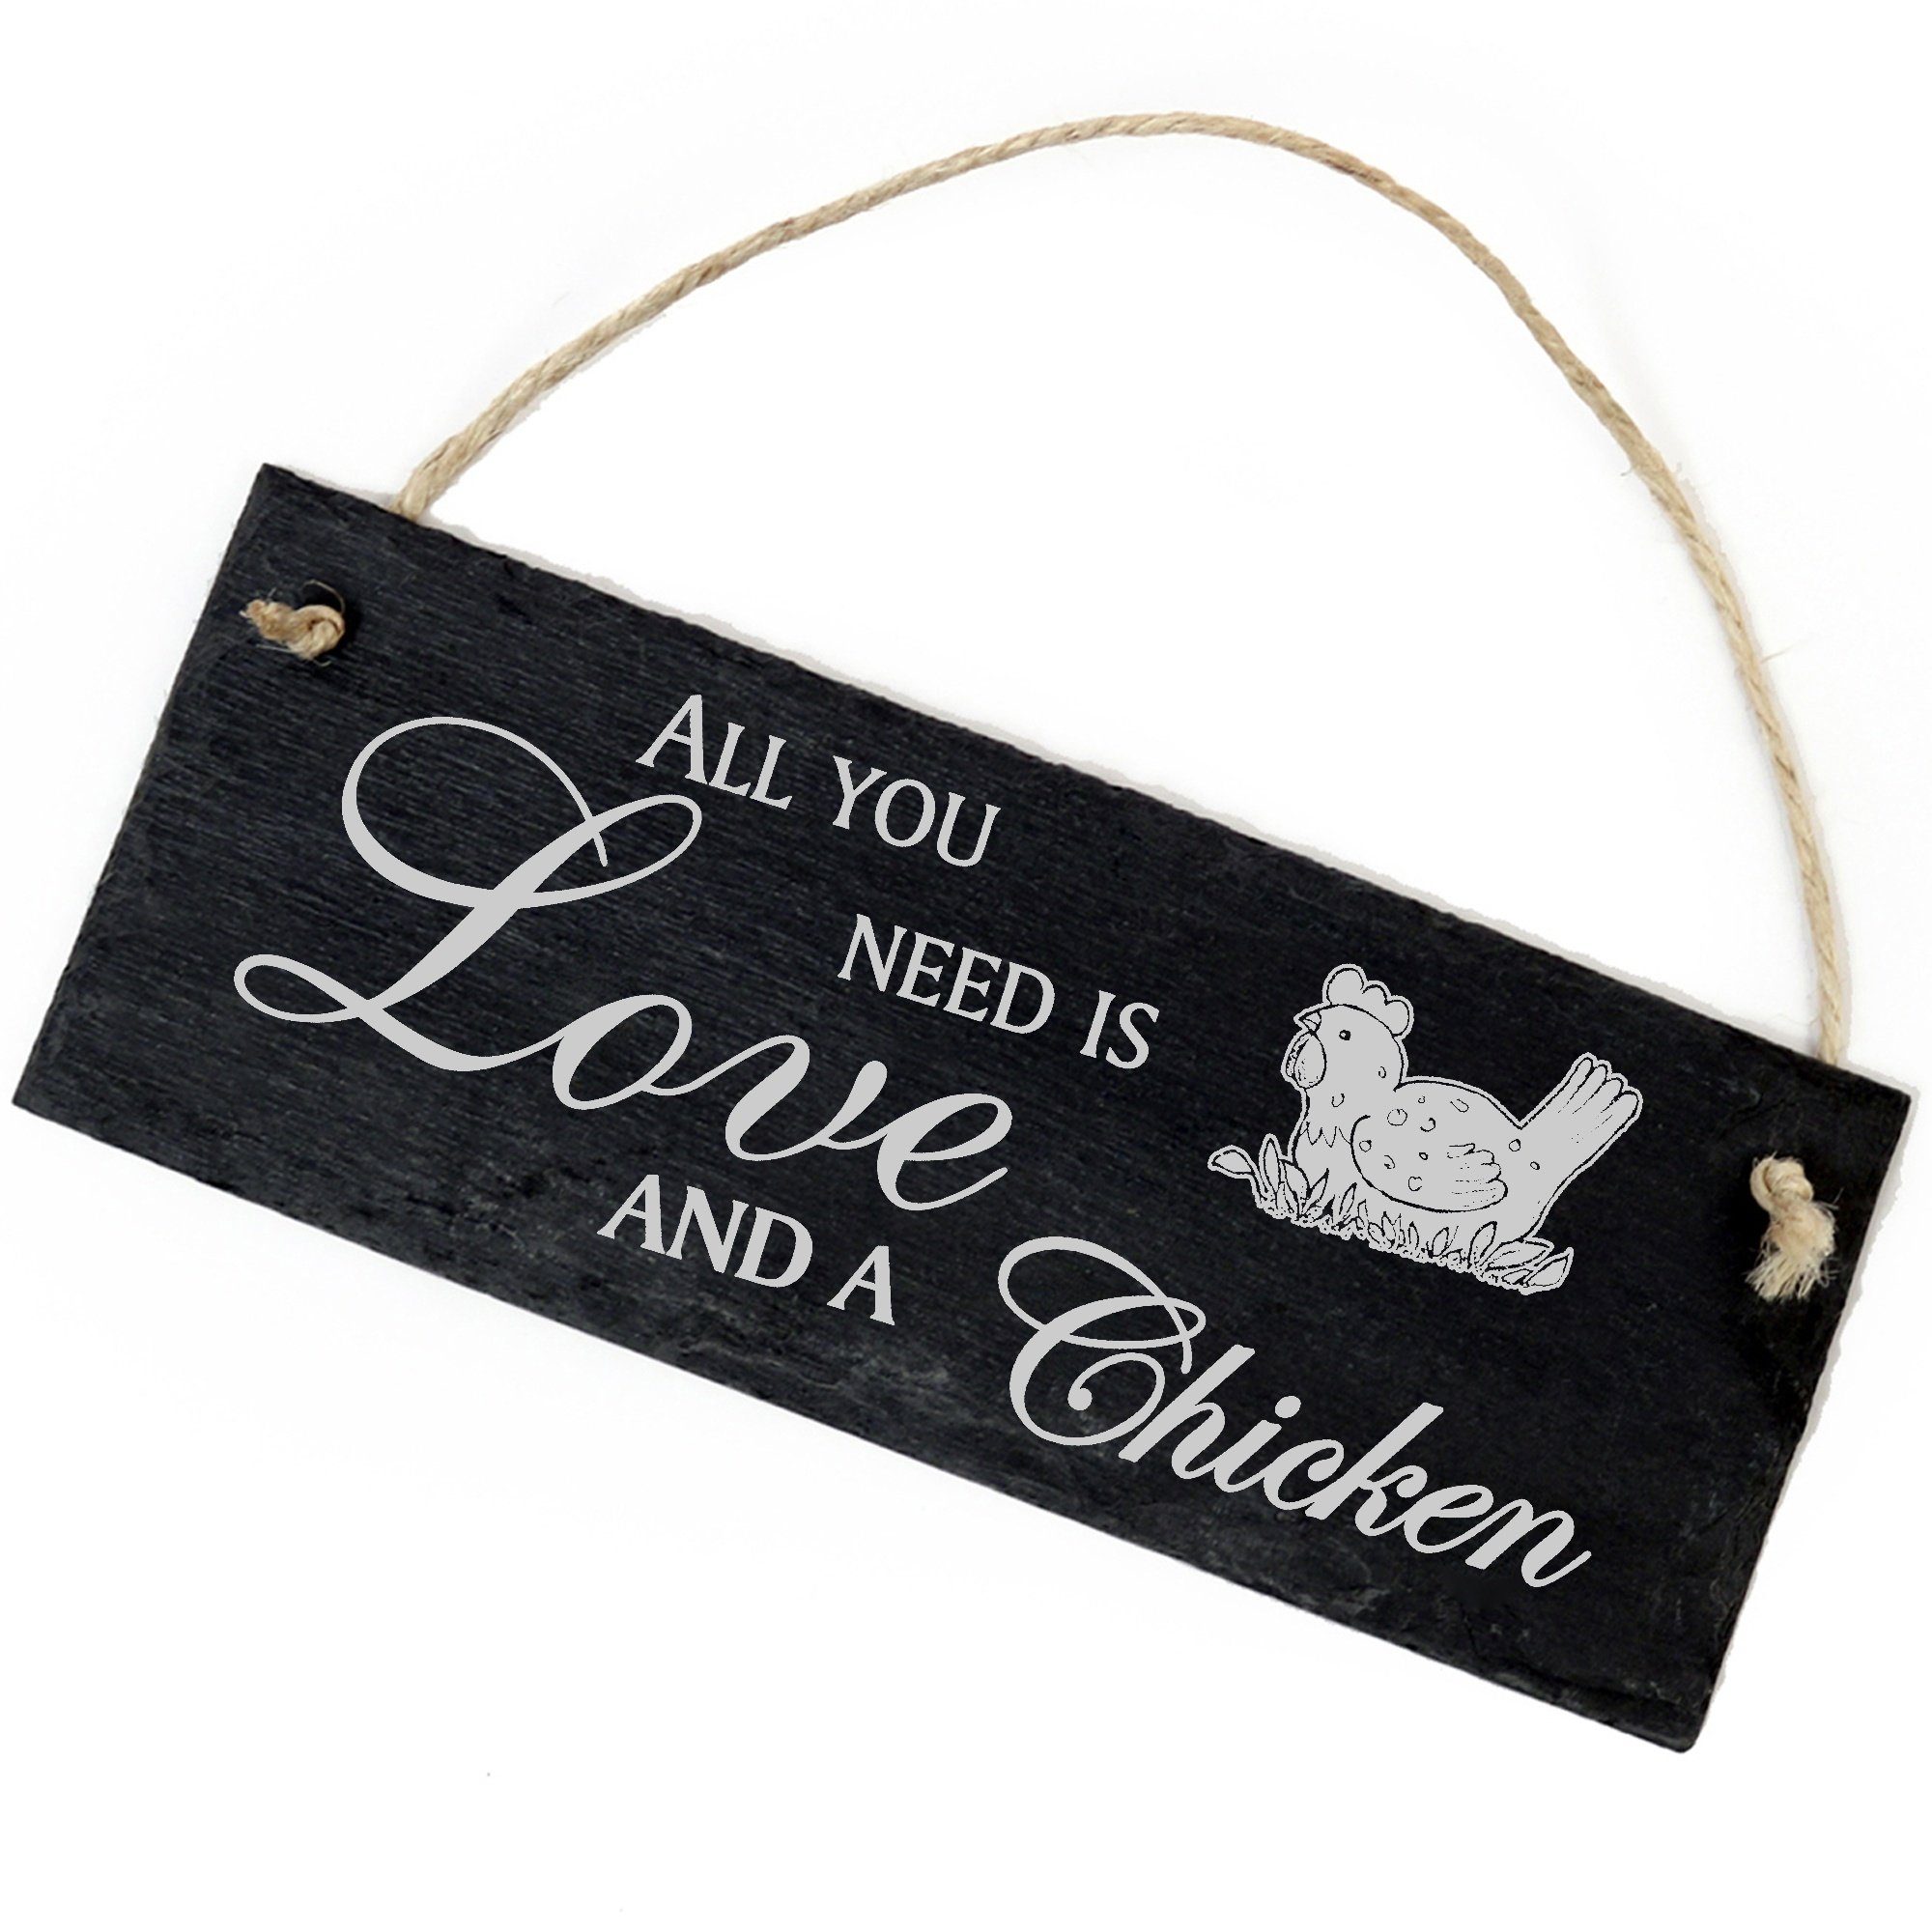 Dekolando Hängedekoration liegendes Huhn 22x8cm All you need is Love and a Chicken